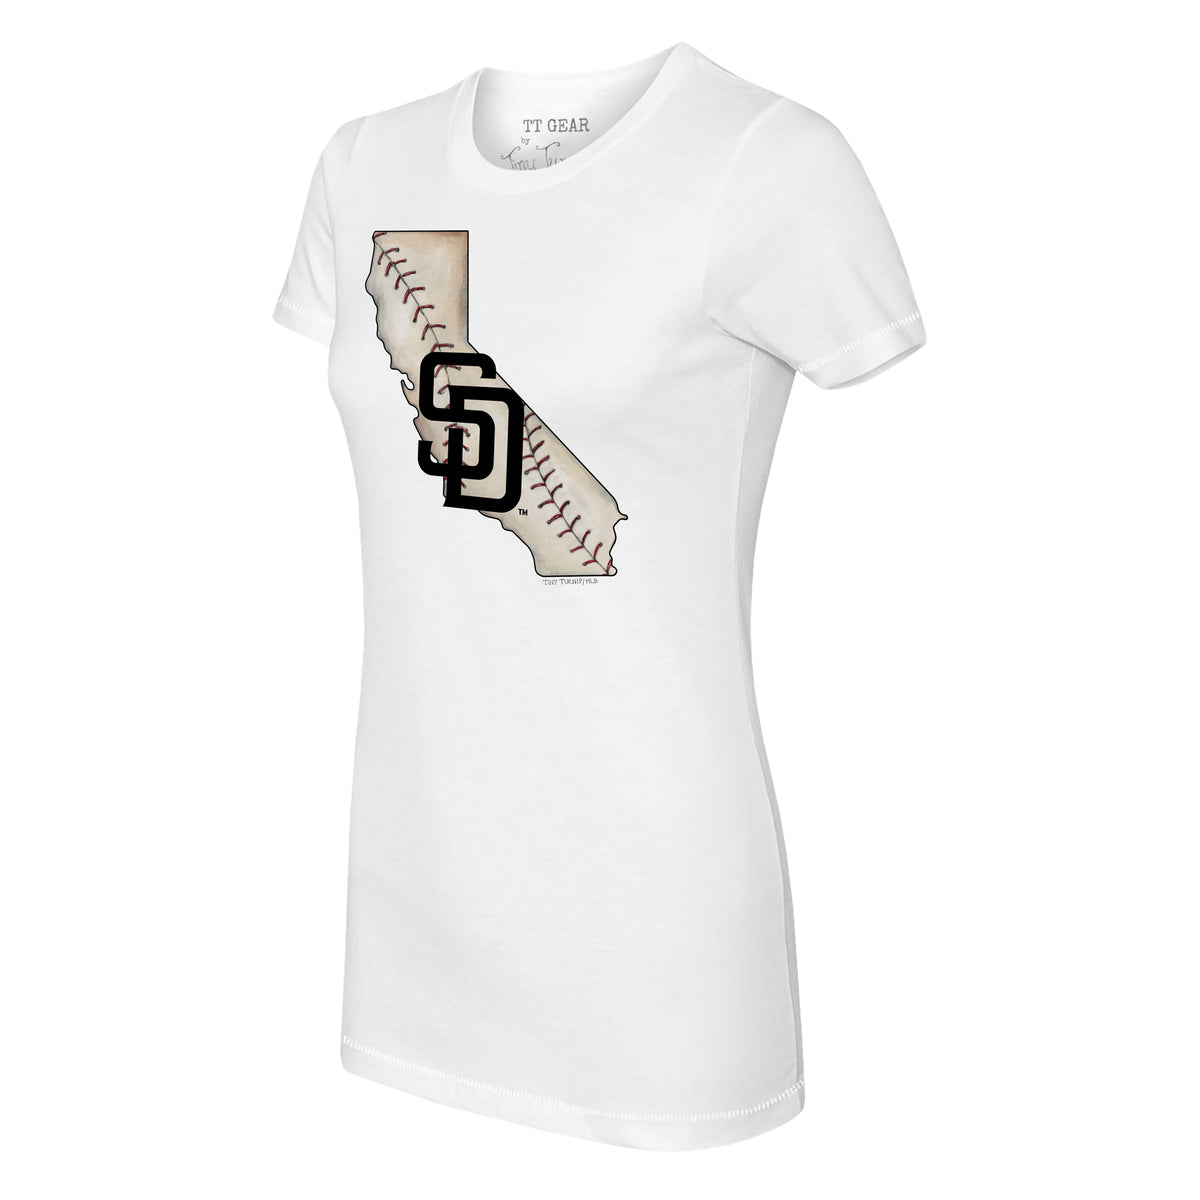 Tiny Turnip San Diego Padres Tiara Heart Tee Shirt Women's XL / White